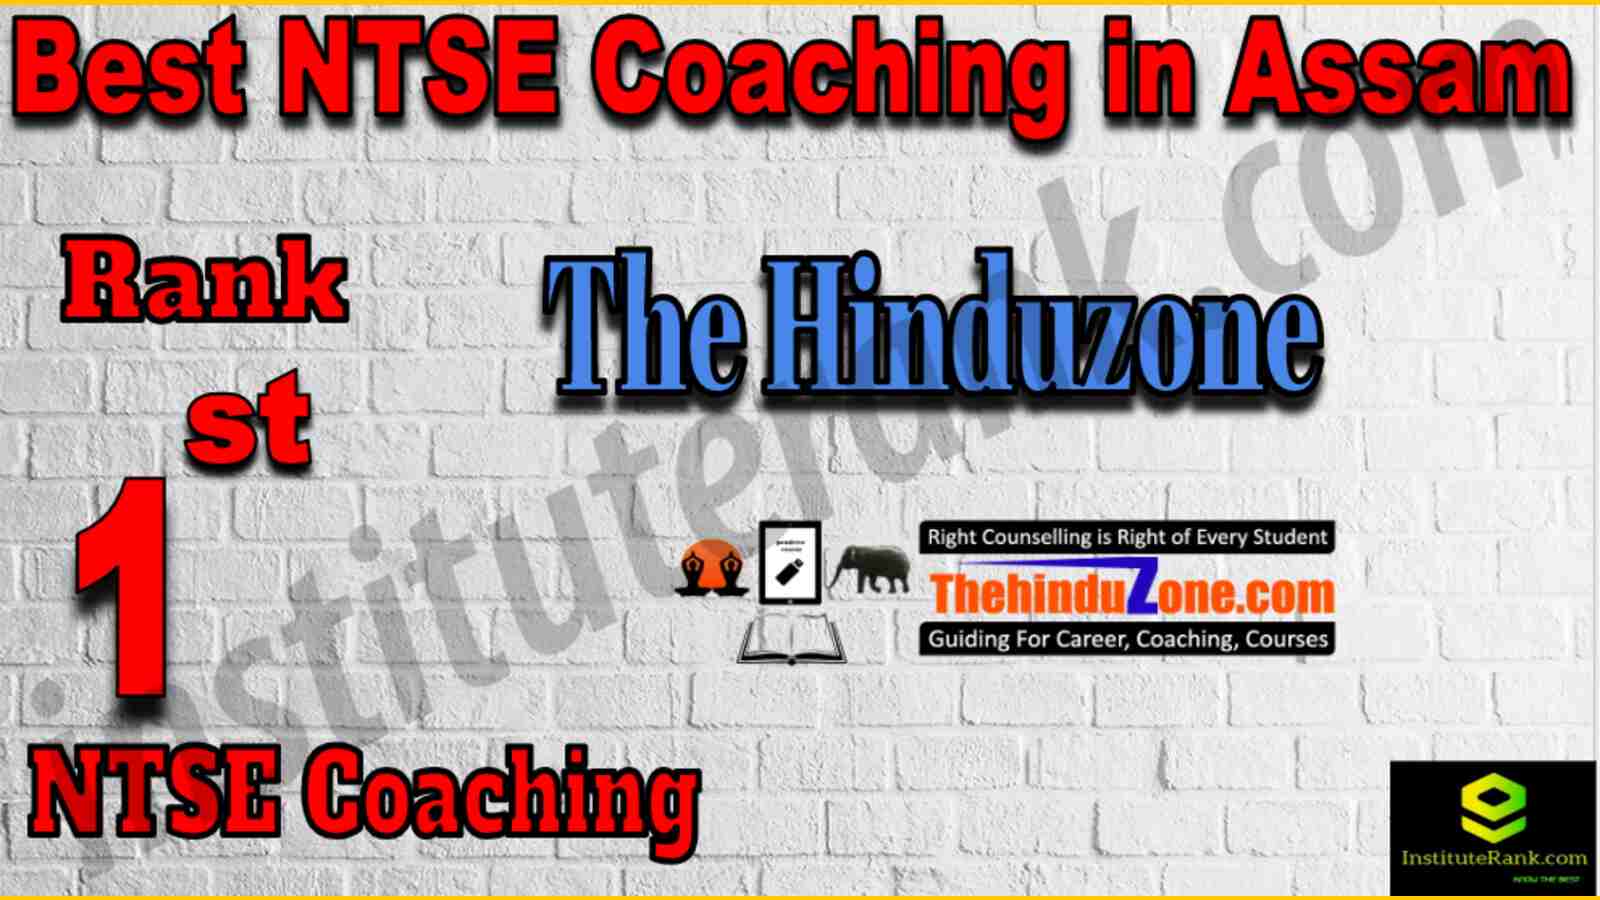 1st Best NTSE Coaching in Assam